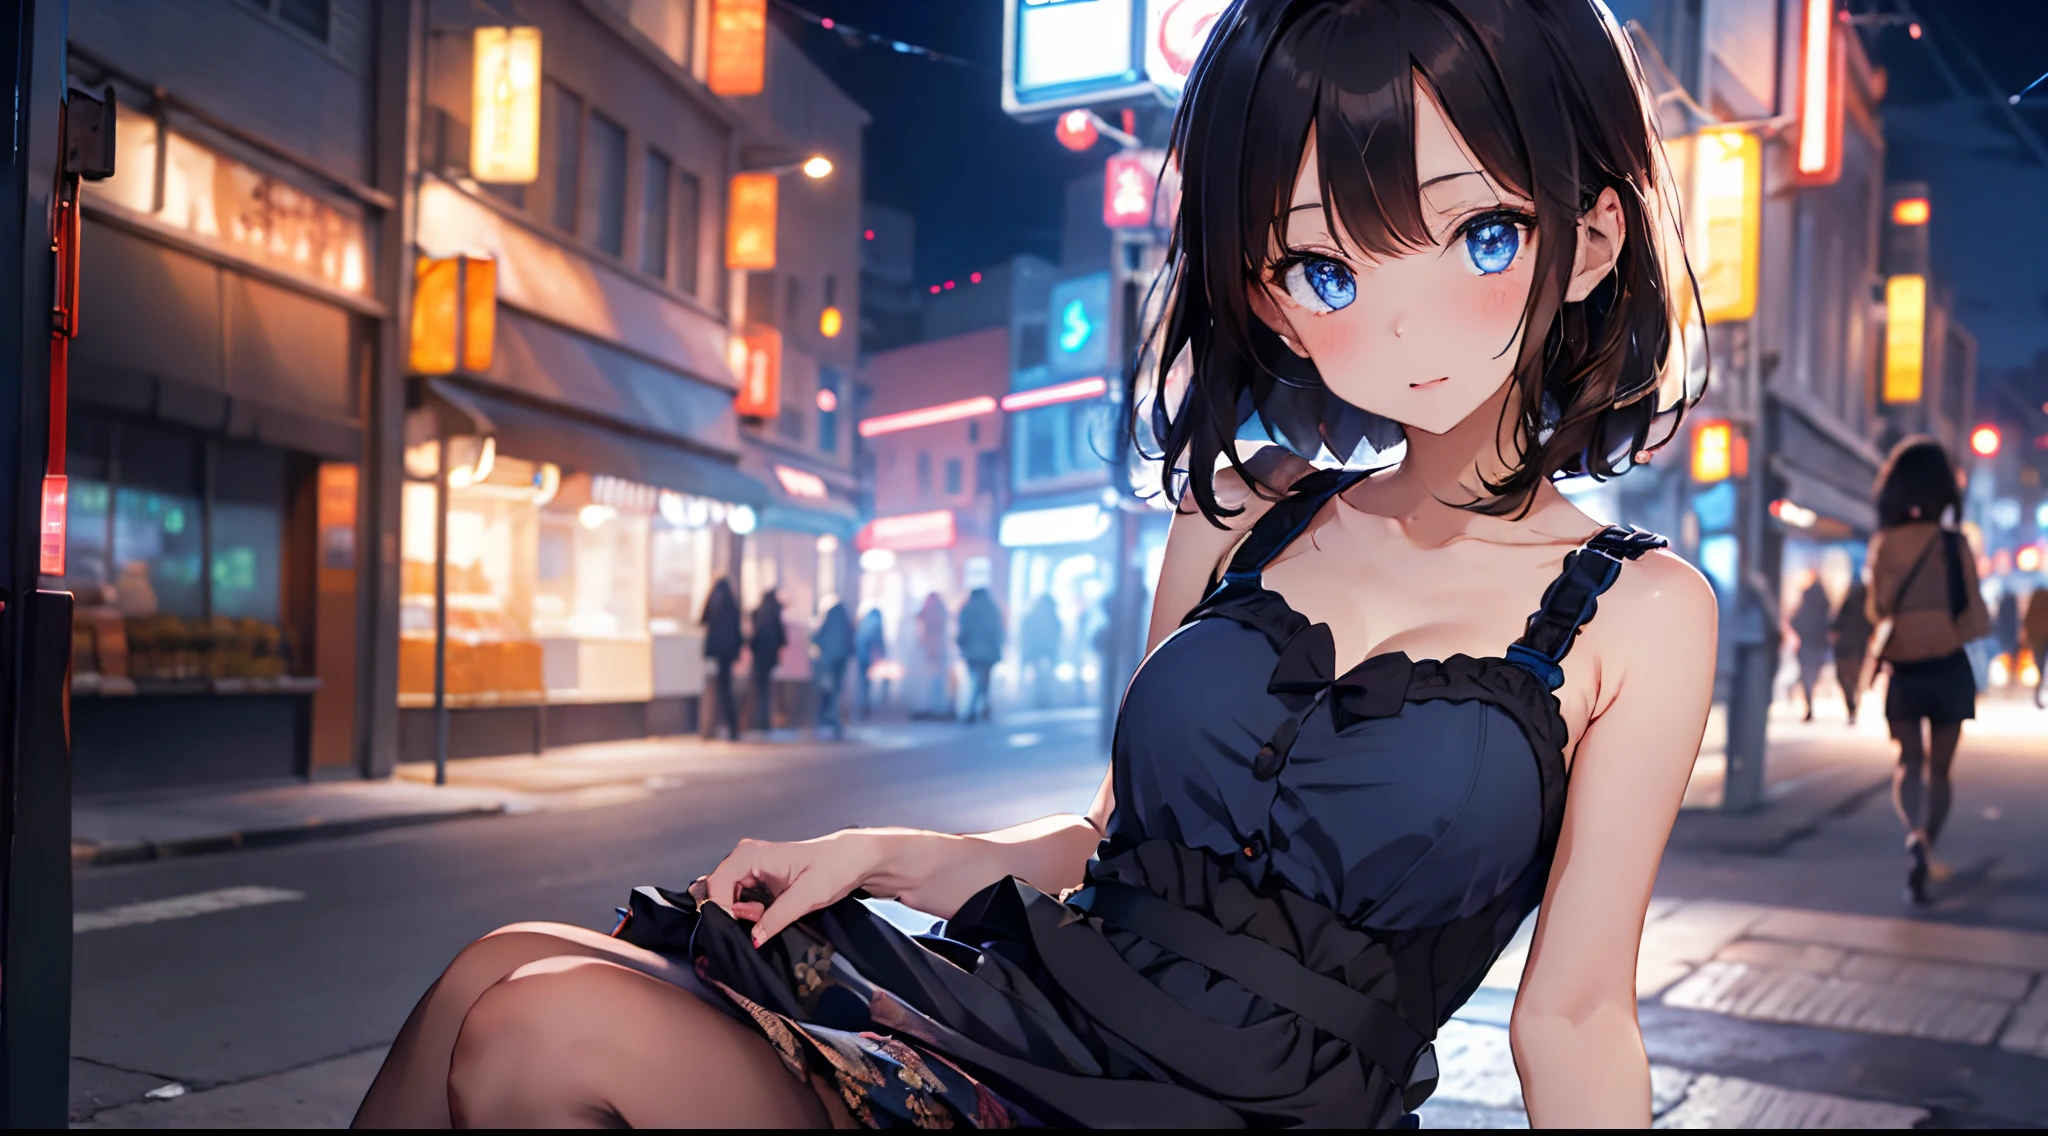 1 garota,cabelo preto acastanhado curto,olhos azuis, usando vestidos Kawaii,Cidade de néon noturno,
absurdos,alta resolução,ultra-afiado,8K,Obra de arte,olhando para o espectador,tiro no busto.